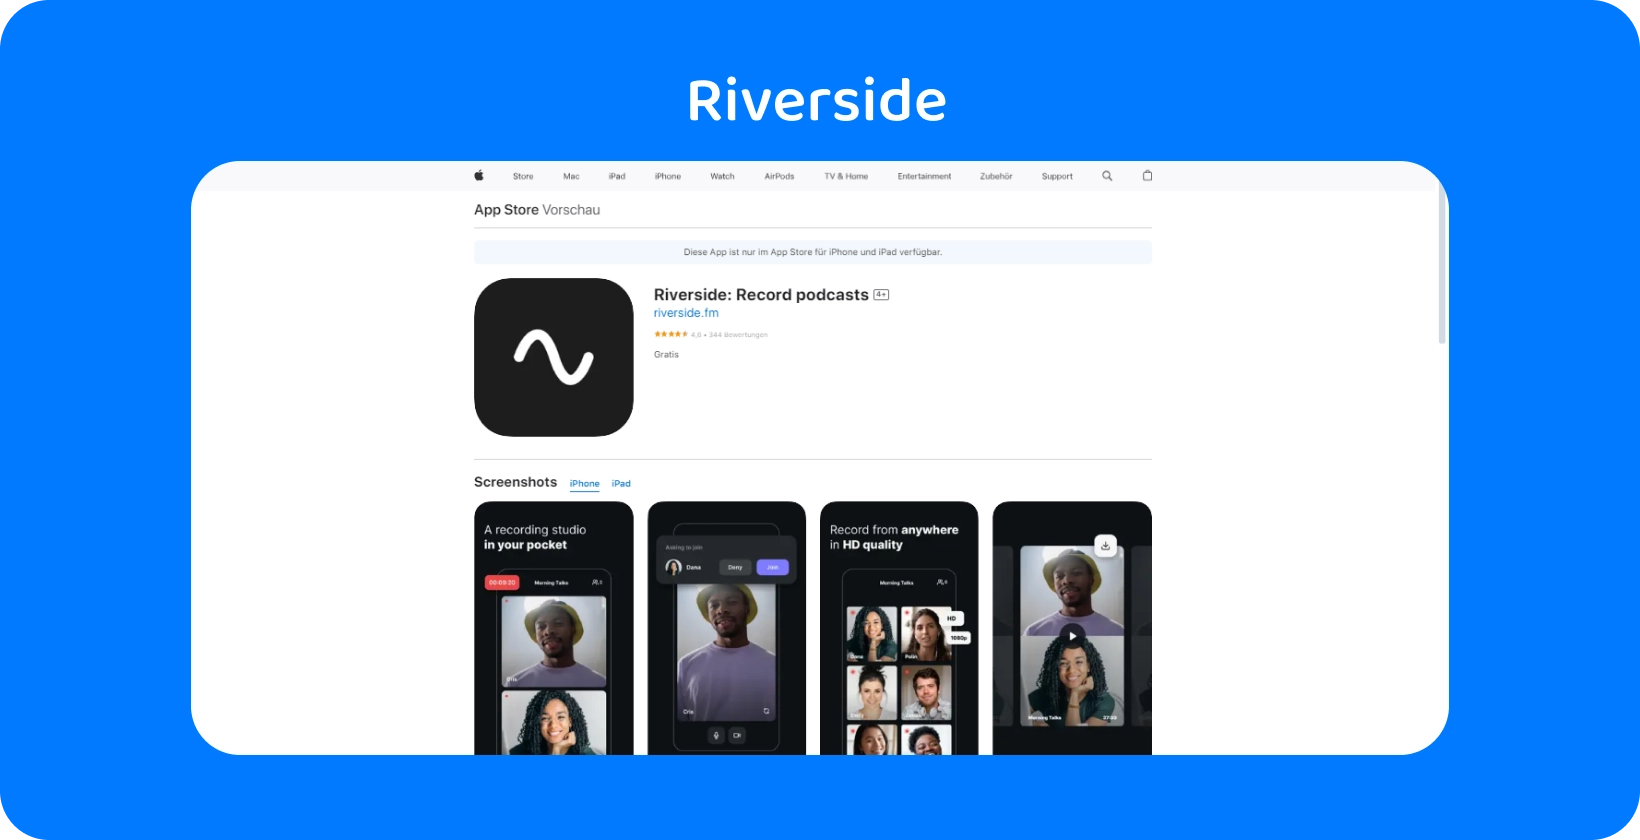 Додаток Riverside на App Store показує інструменти для якісного запису подкастів і віддалених інтерв'ю.